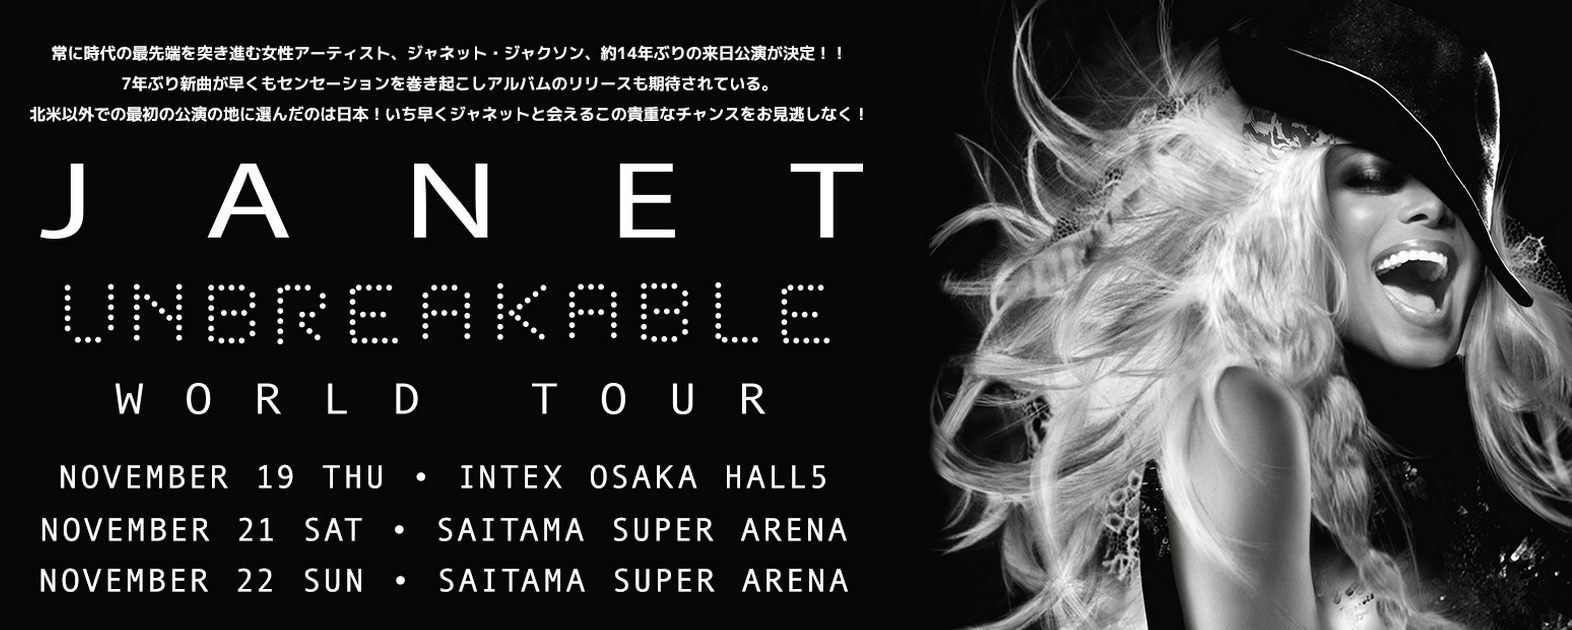 Janet_jackson_unbreakable_tour_japan